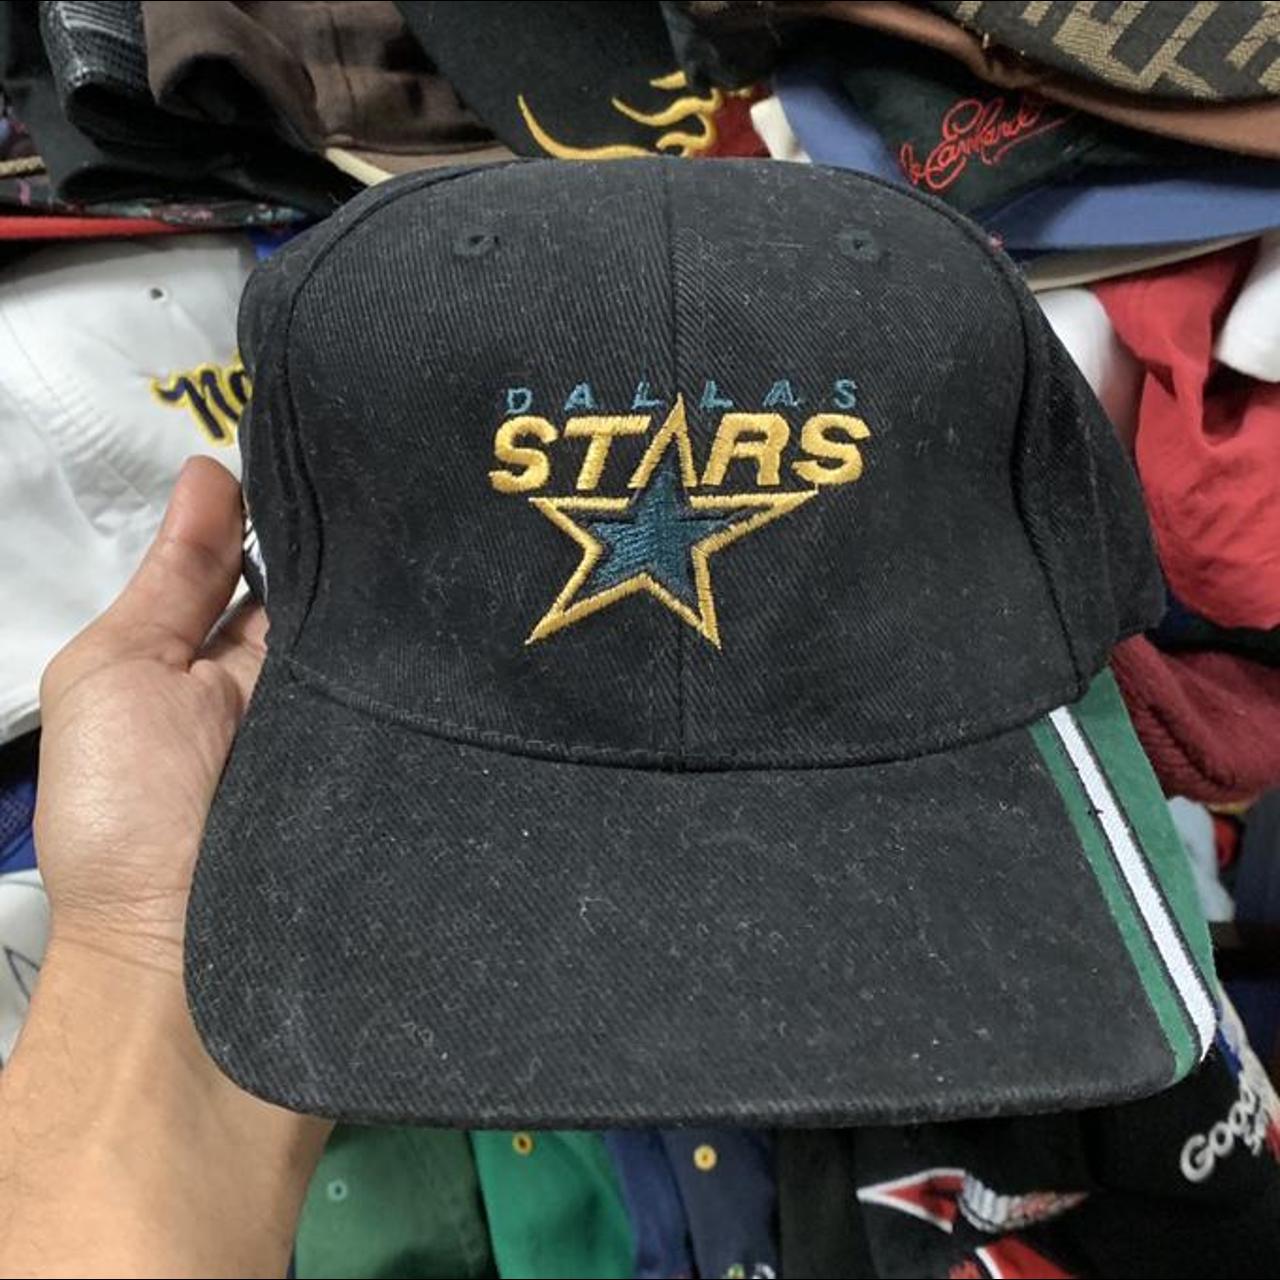 Dallas Stars Hats, Stars Snapbacks, Dallas Stars Hats, Dallas